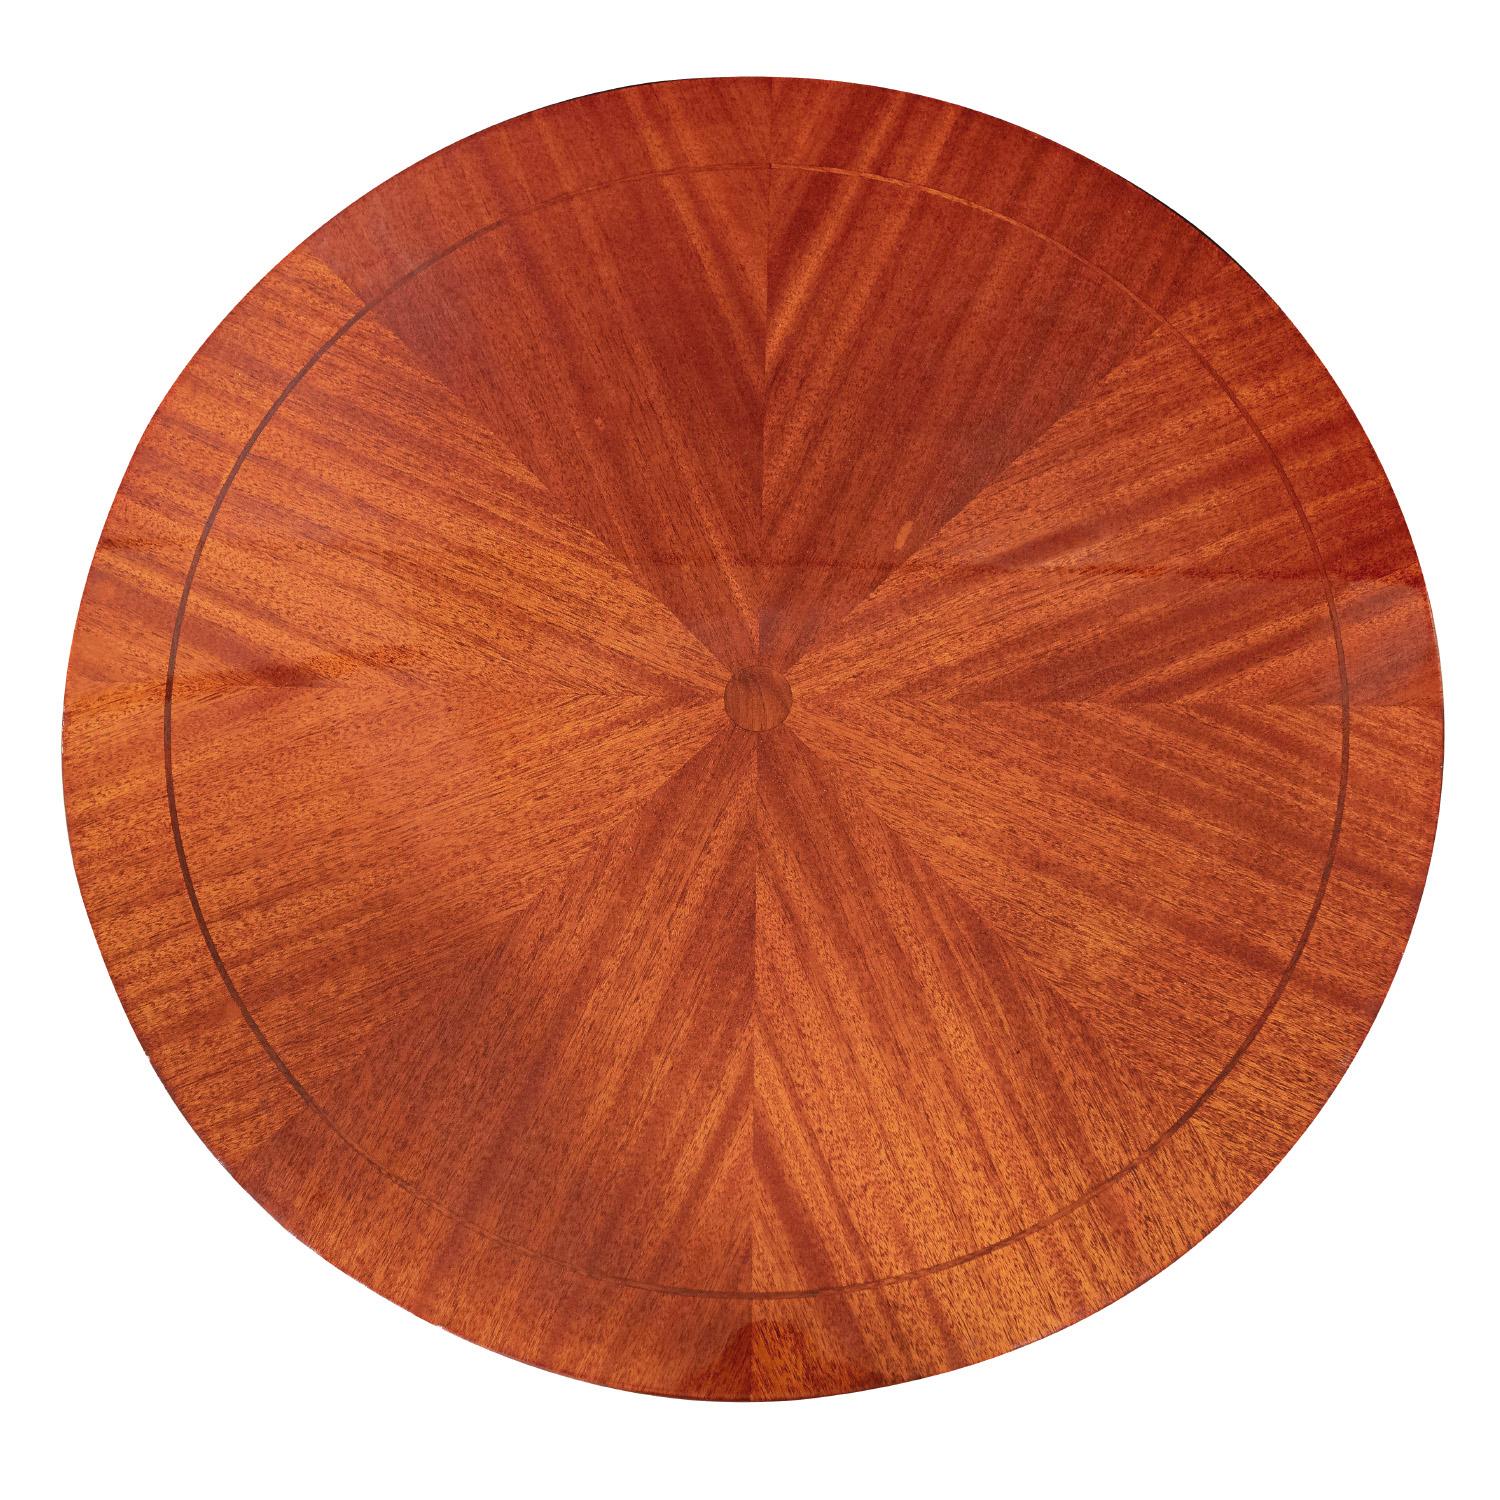 Hand-Crafted Shelton-Mindel Designed Round Mahogany Side Table 1990s